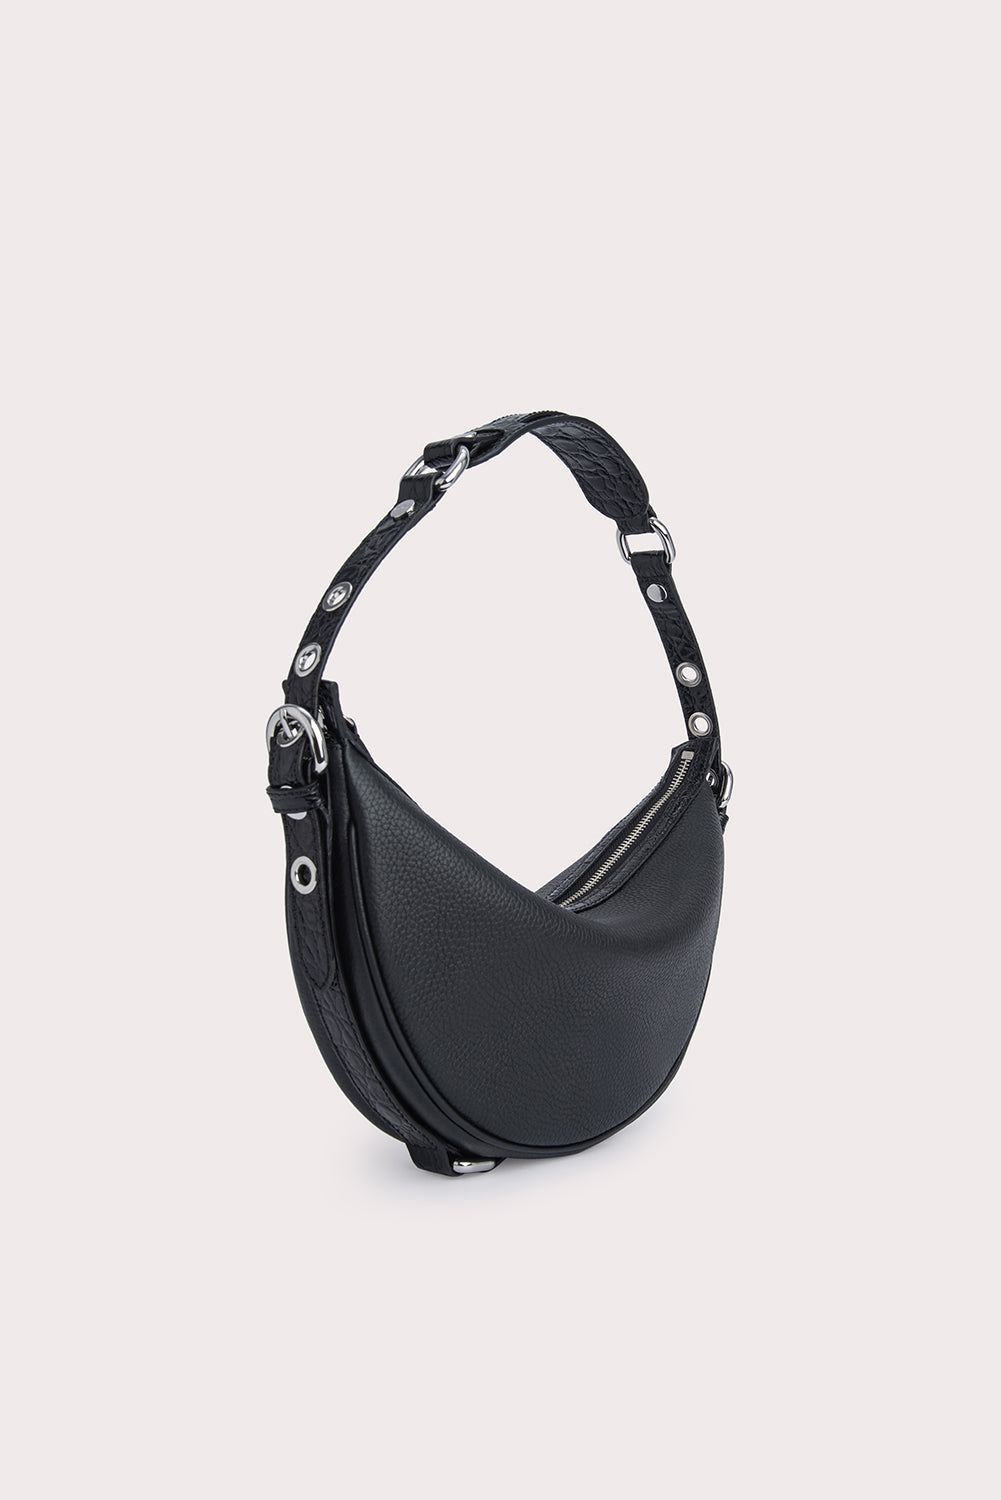 Buy Tan Handcrafted Faux Leather Shoulder Bag Online at Jayporecom